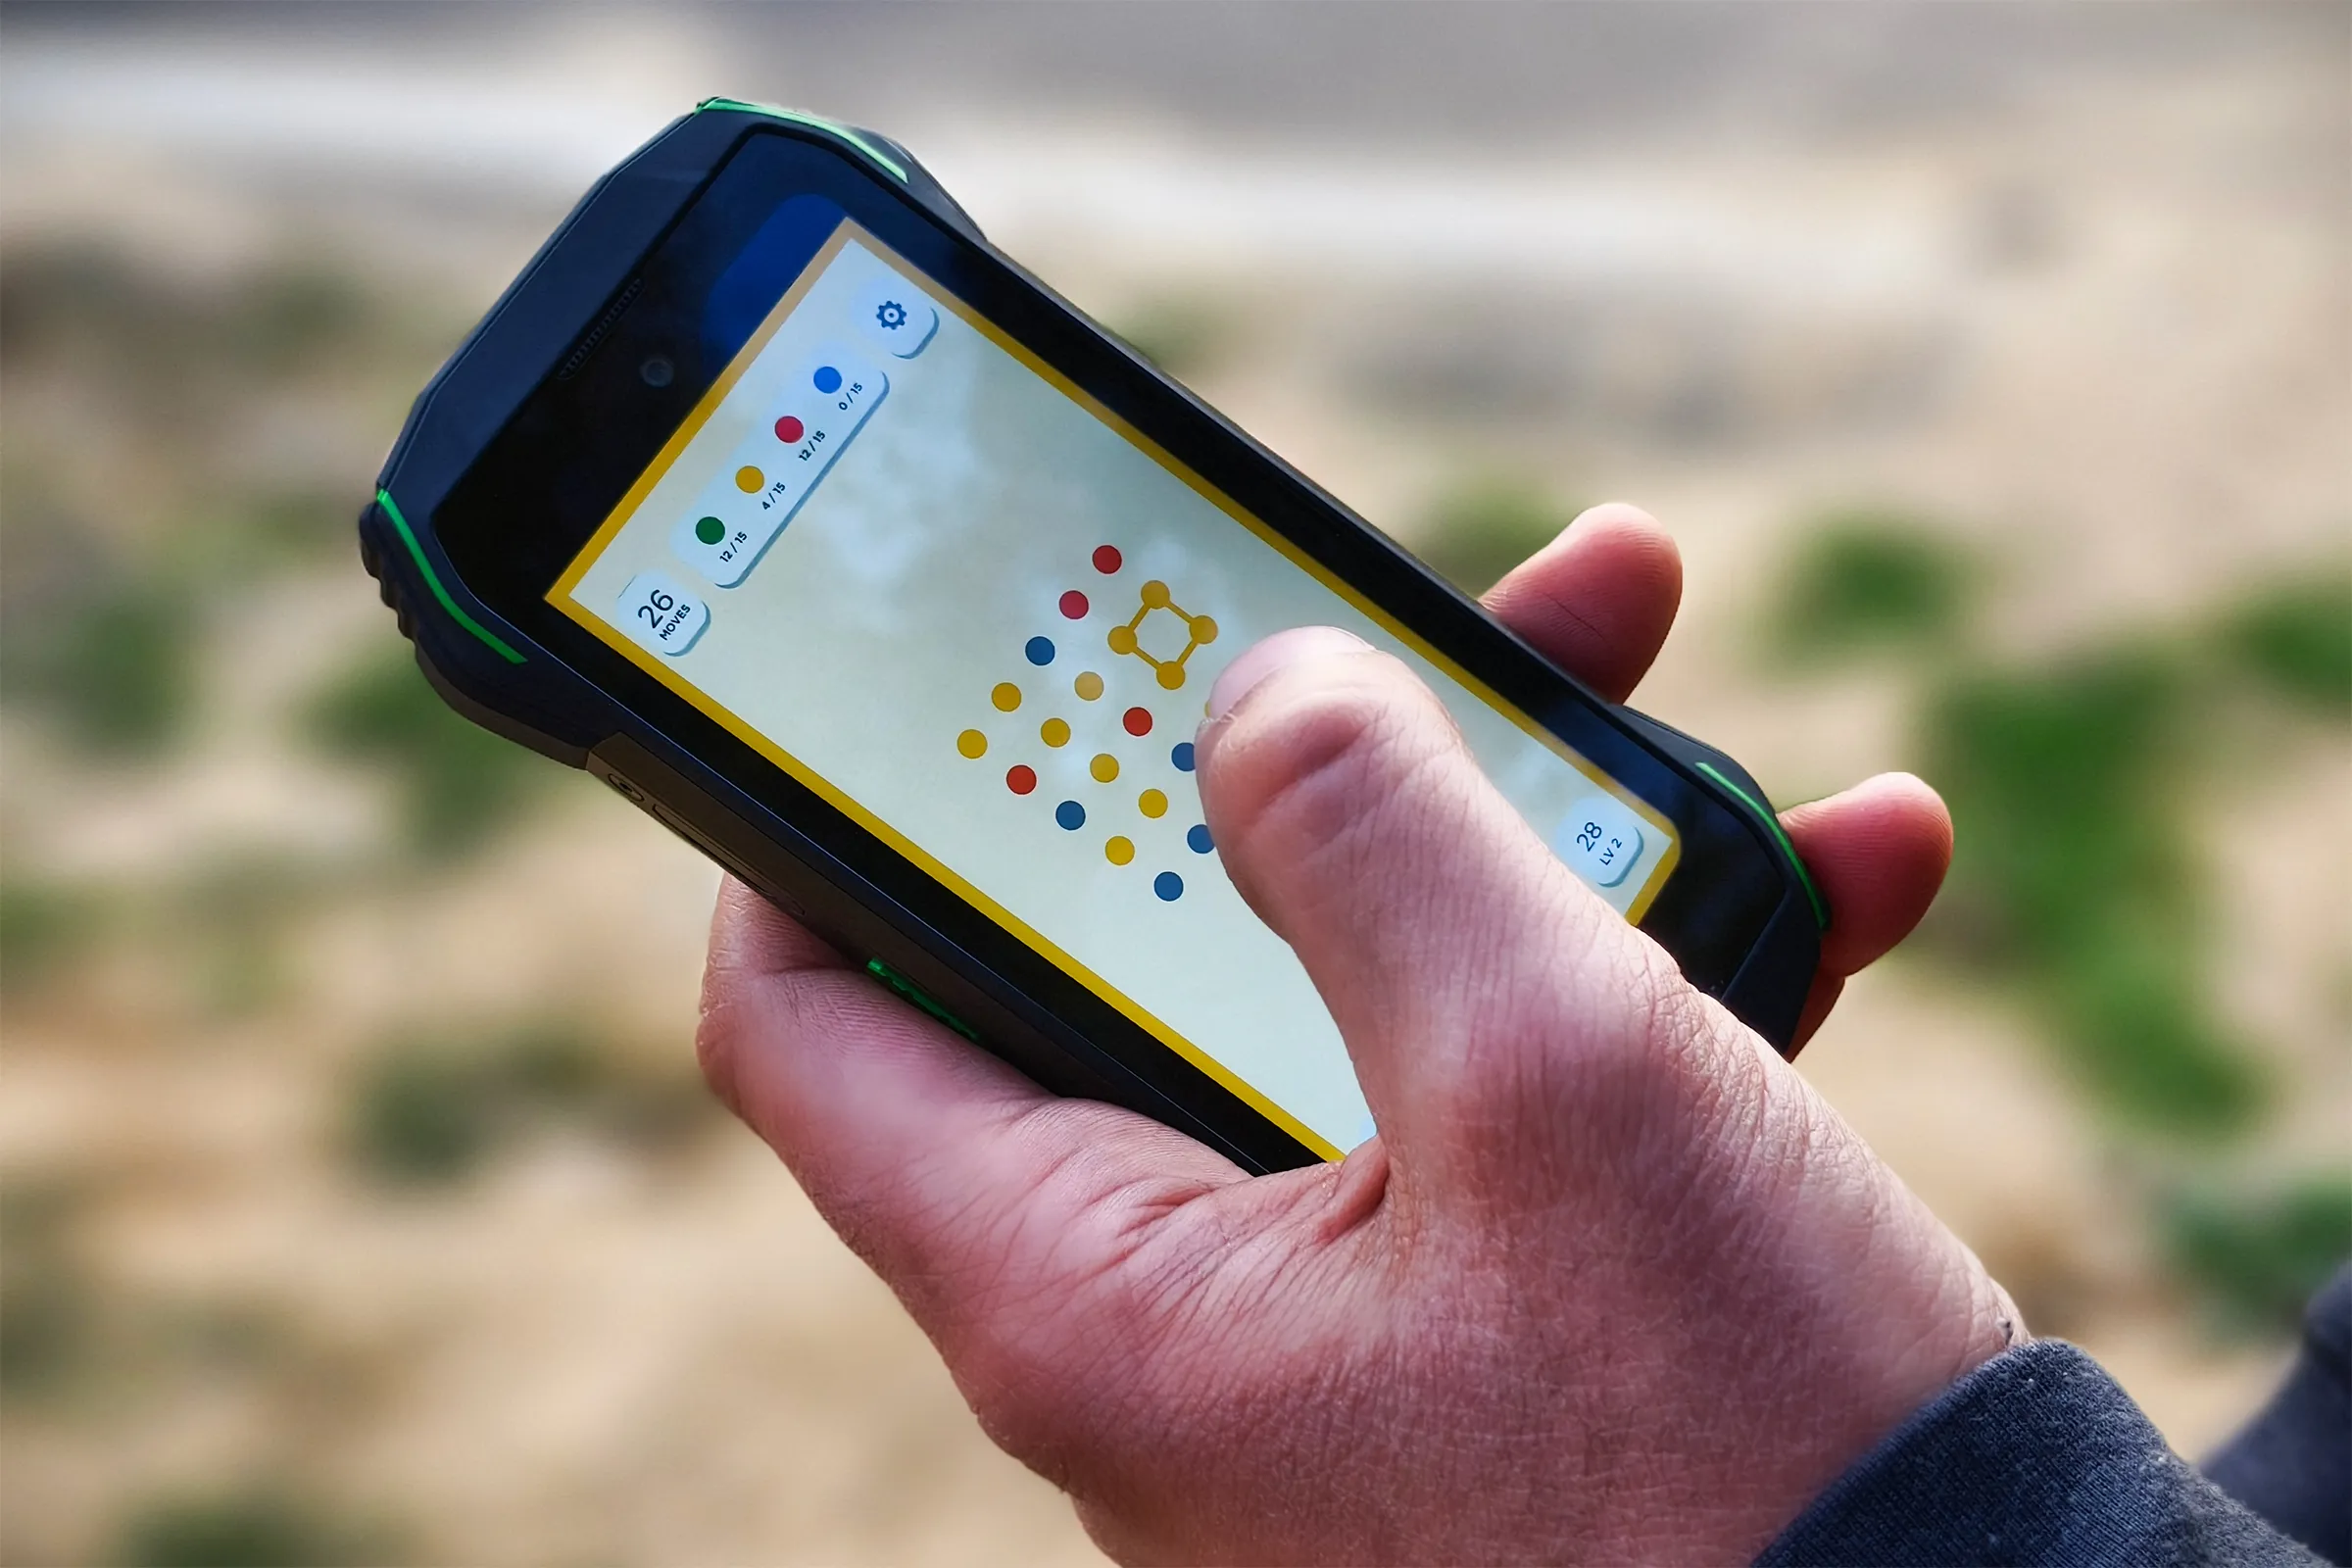 Gioco Two Dots sul piccolo telefono Android robusto Blackview N6000 tenuto nella mano di una persona.